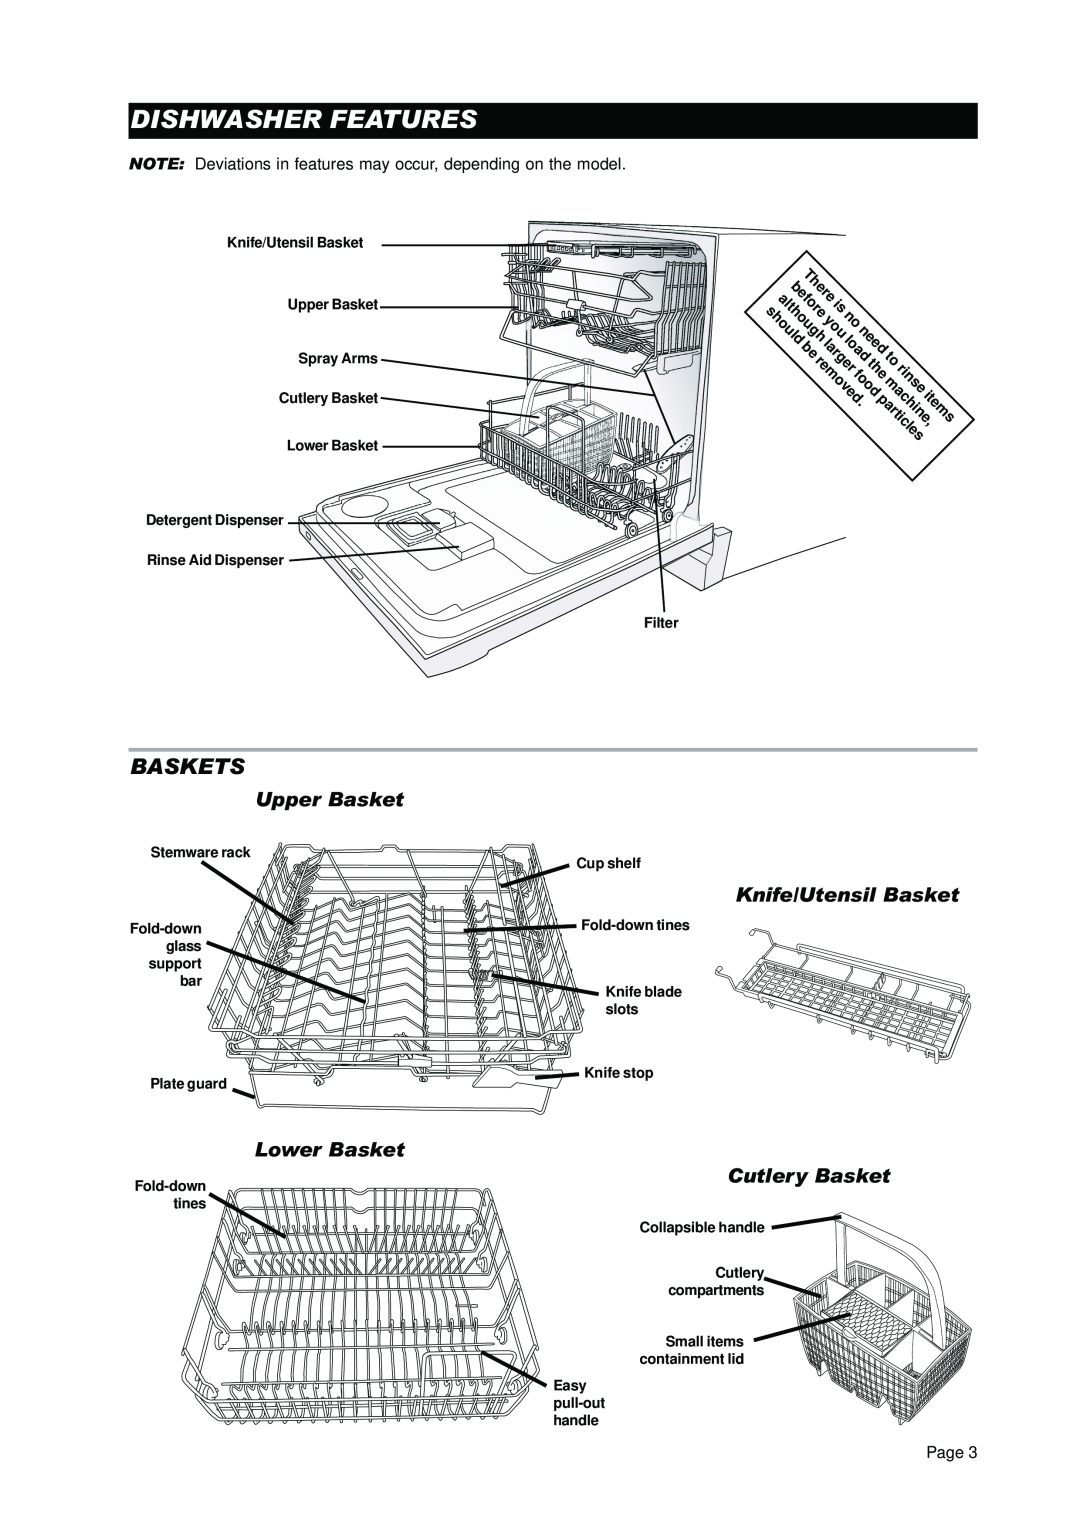 Asko D3530 Dishwasher Features, Baskets, Lower Basket, Cutlery Basket, before, rinse, Upper Basket, Knife/Utensil Basket 